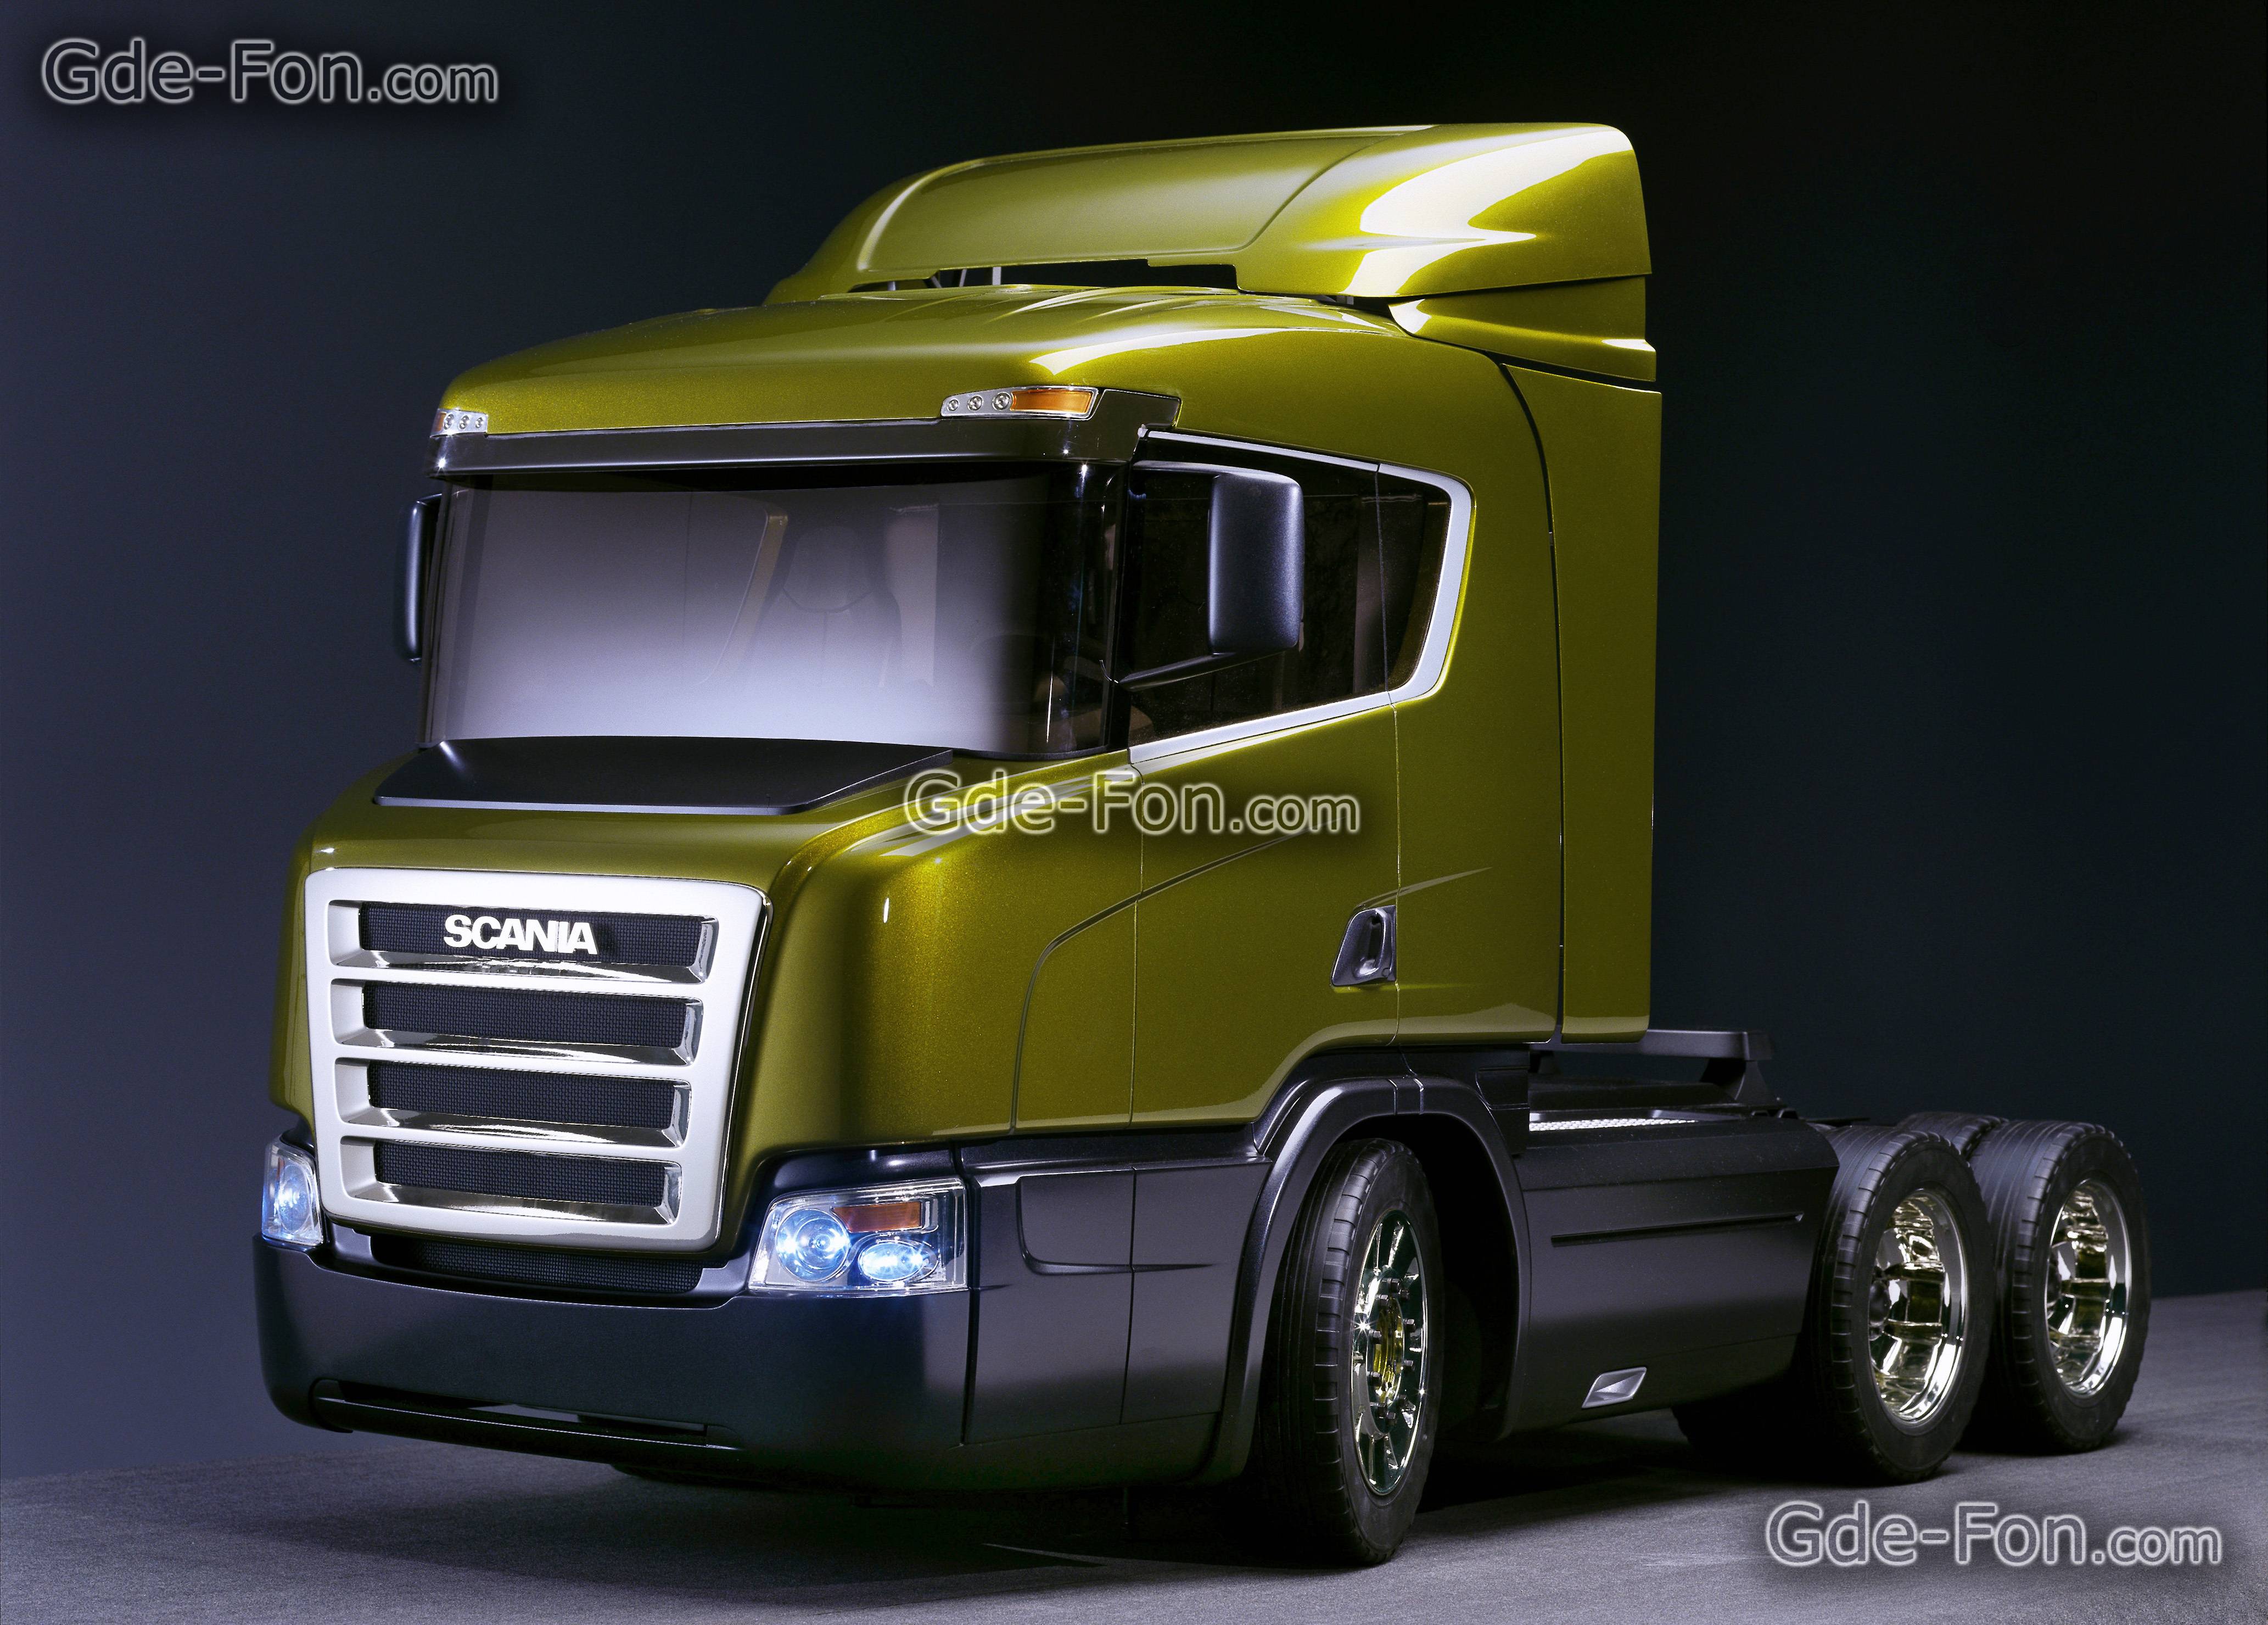 Scania Trucks Wallpapers - Fondo De Pantalla De Camiones Scania , HD Wallpaper & Backgrounds